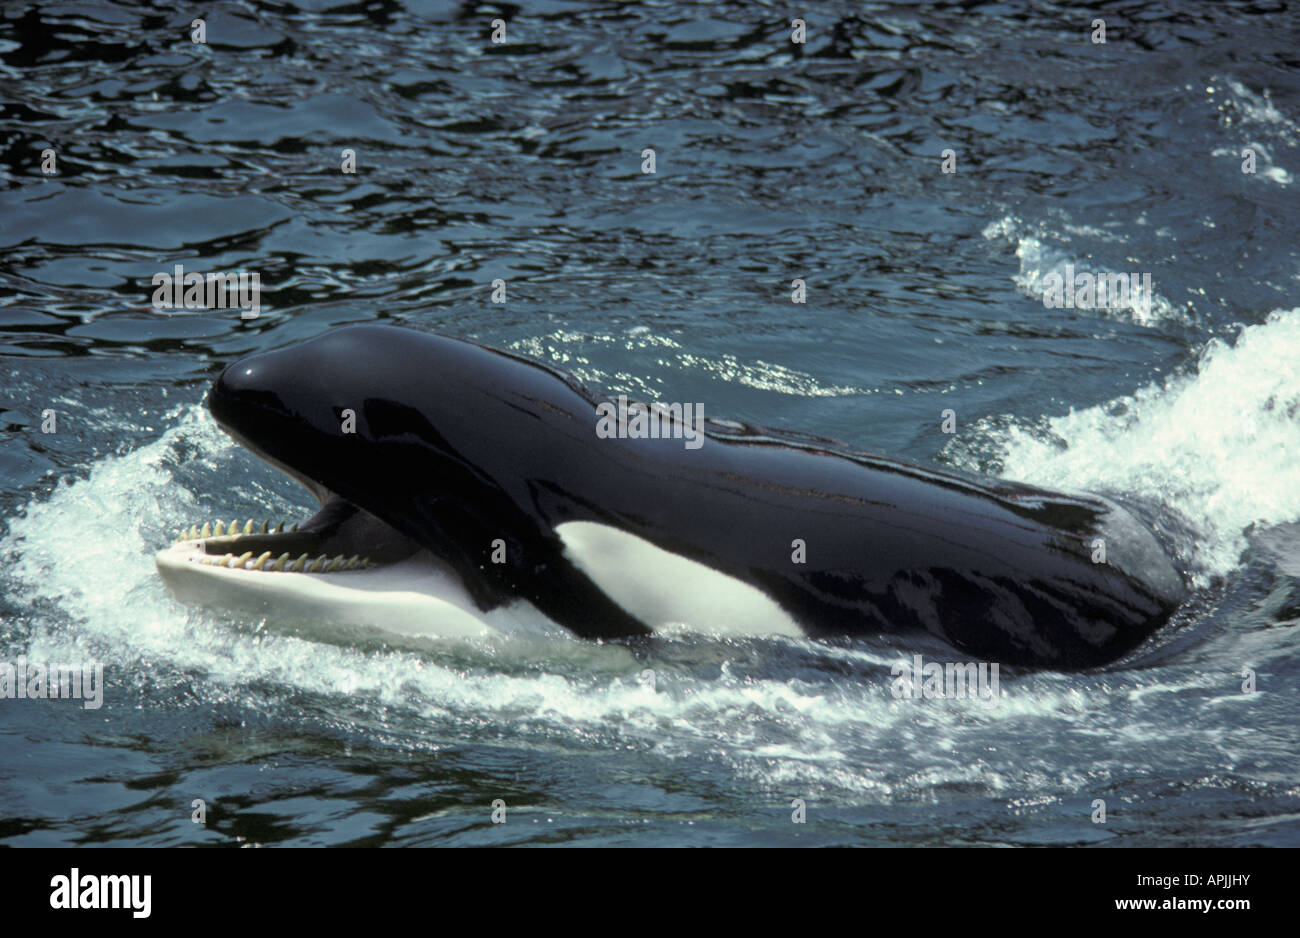 Espèces CANADA Colombie-Britannique Orca d'Orques passant de l'action de l'eau seules actions espèces antarctiques Ant Banque D'Images